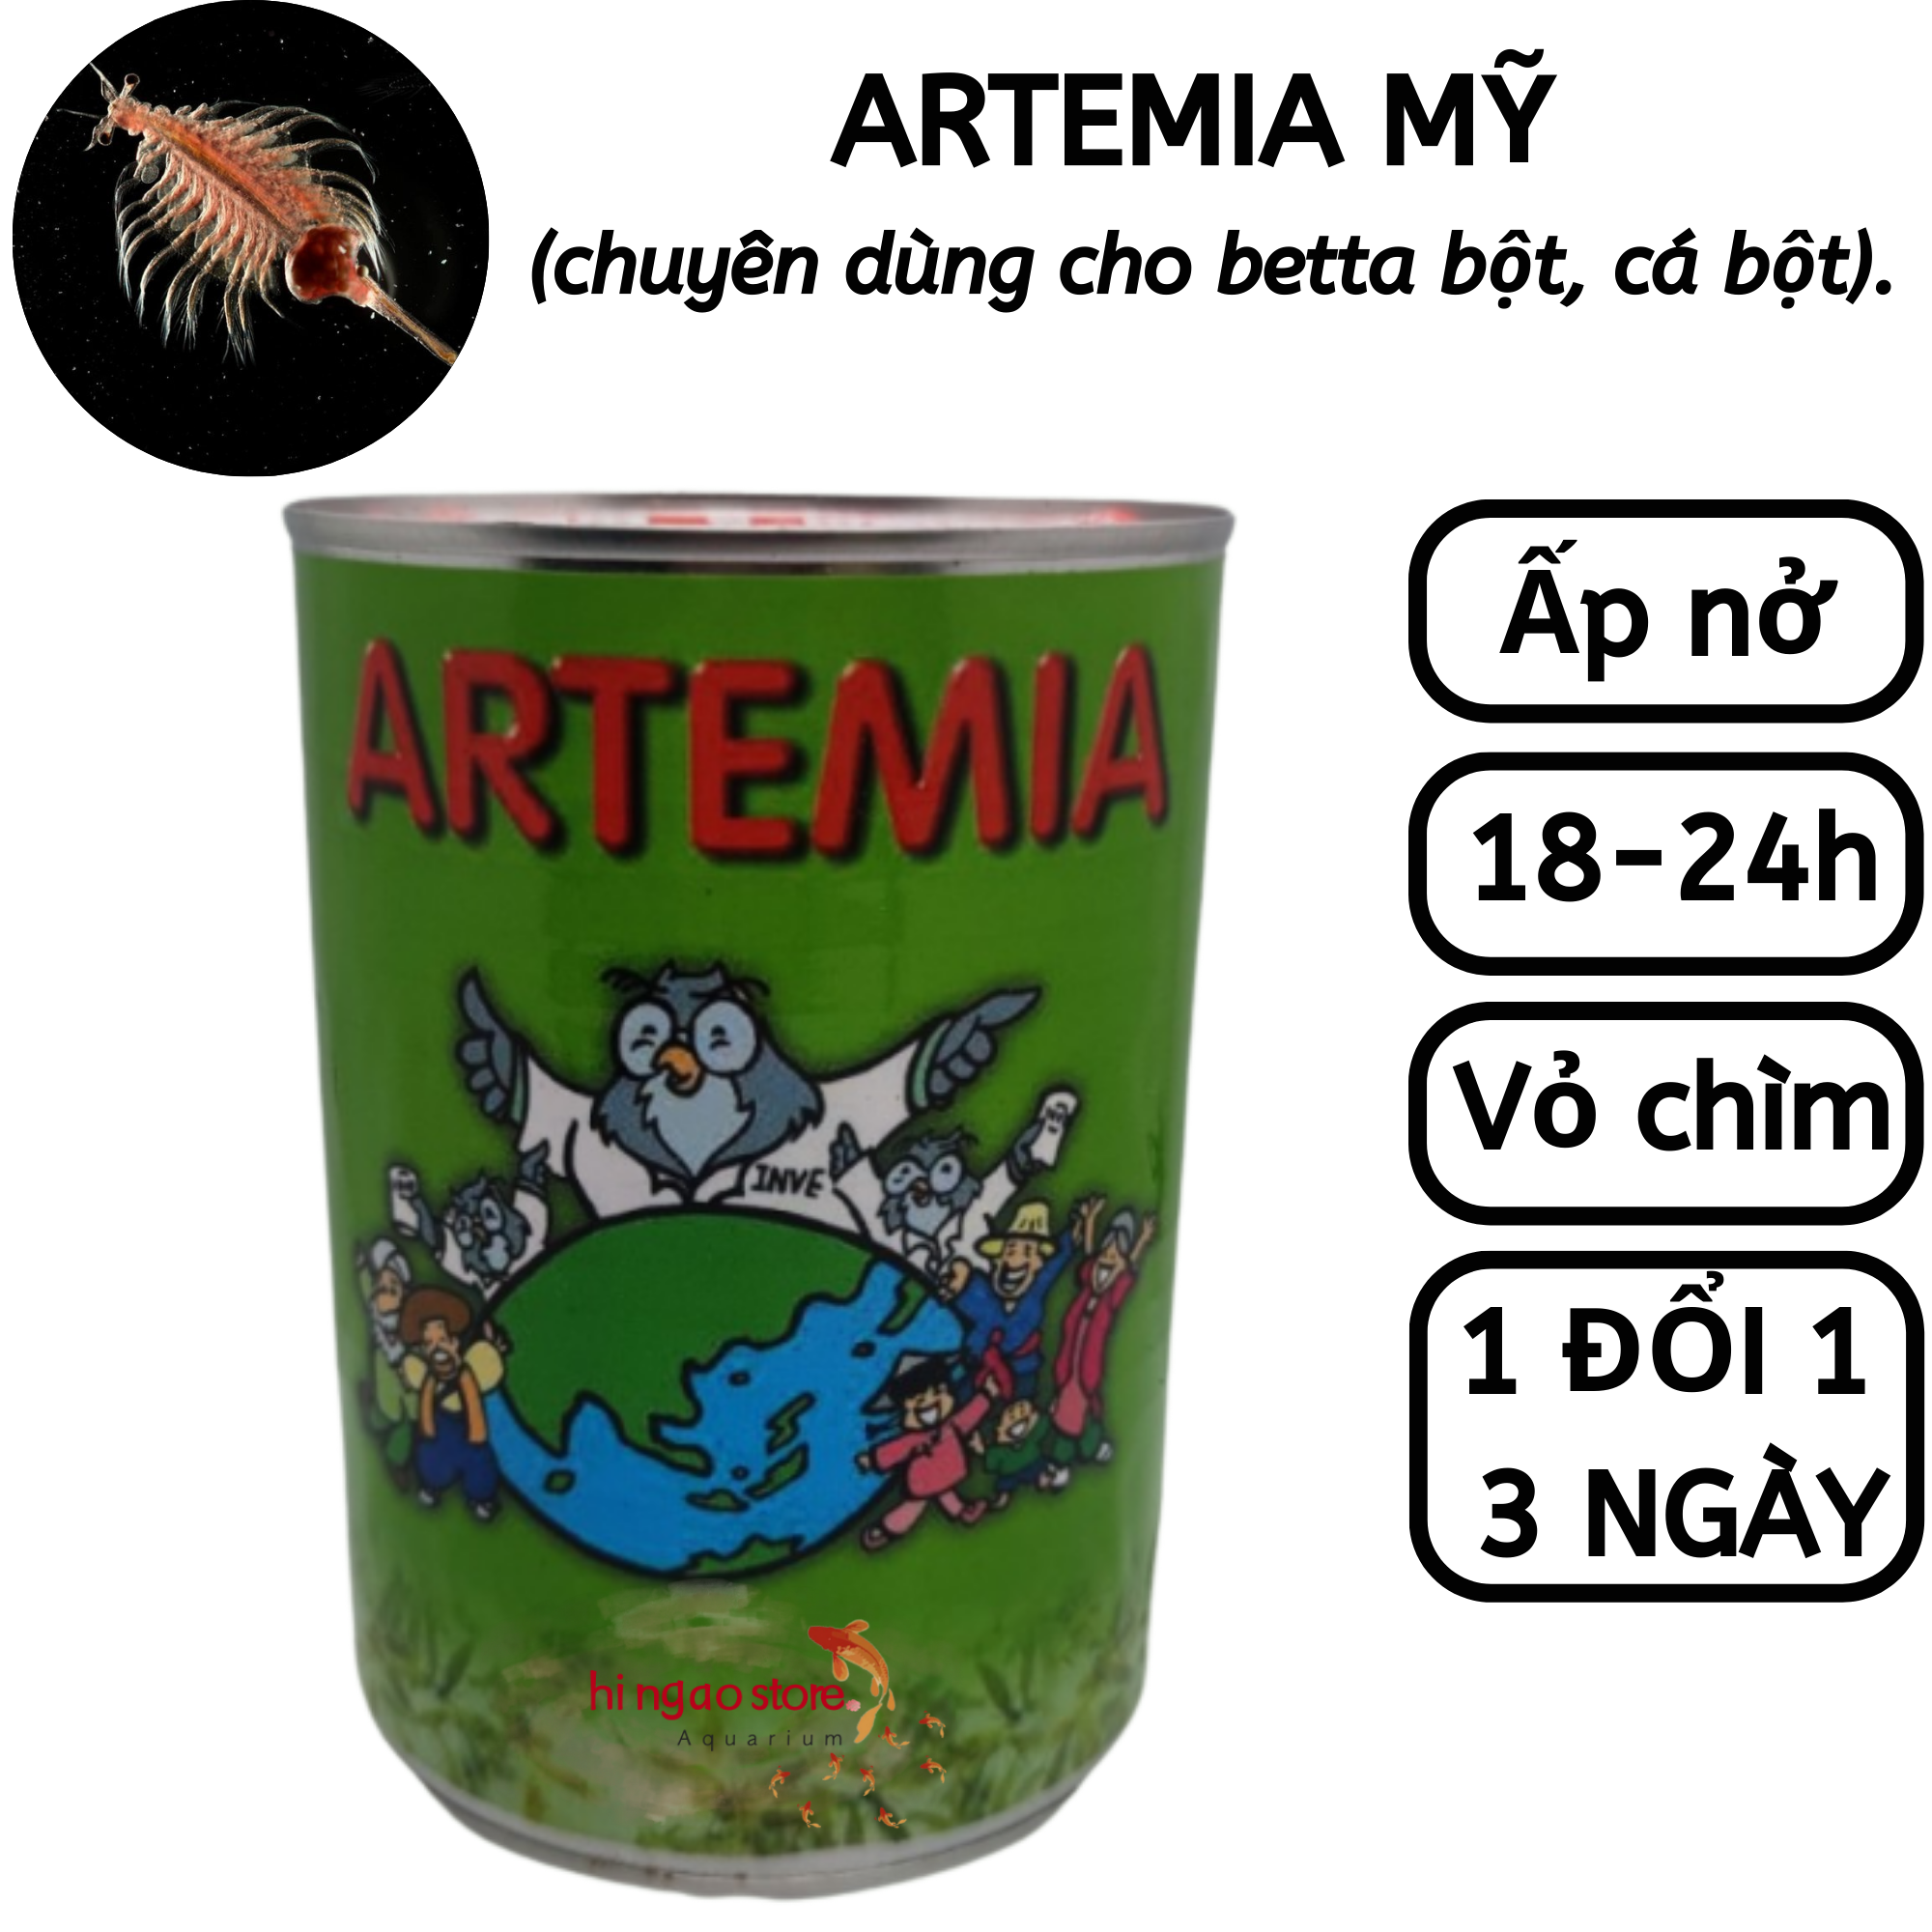 Lon 425g Trứng Artemia Mỹ Hàng Xịn - Thức ăn cá betta bột cá bột (2)| Hingaostore.